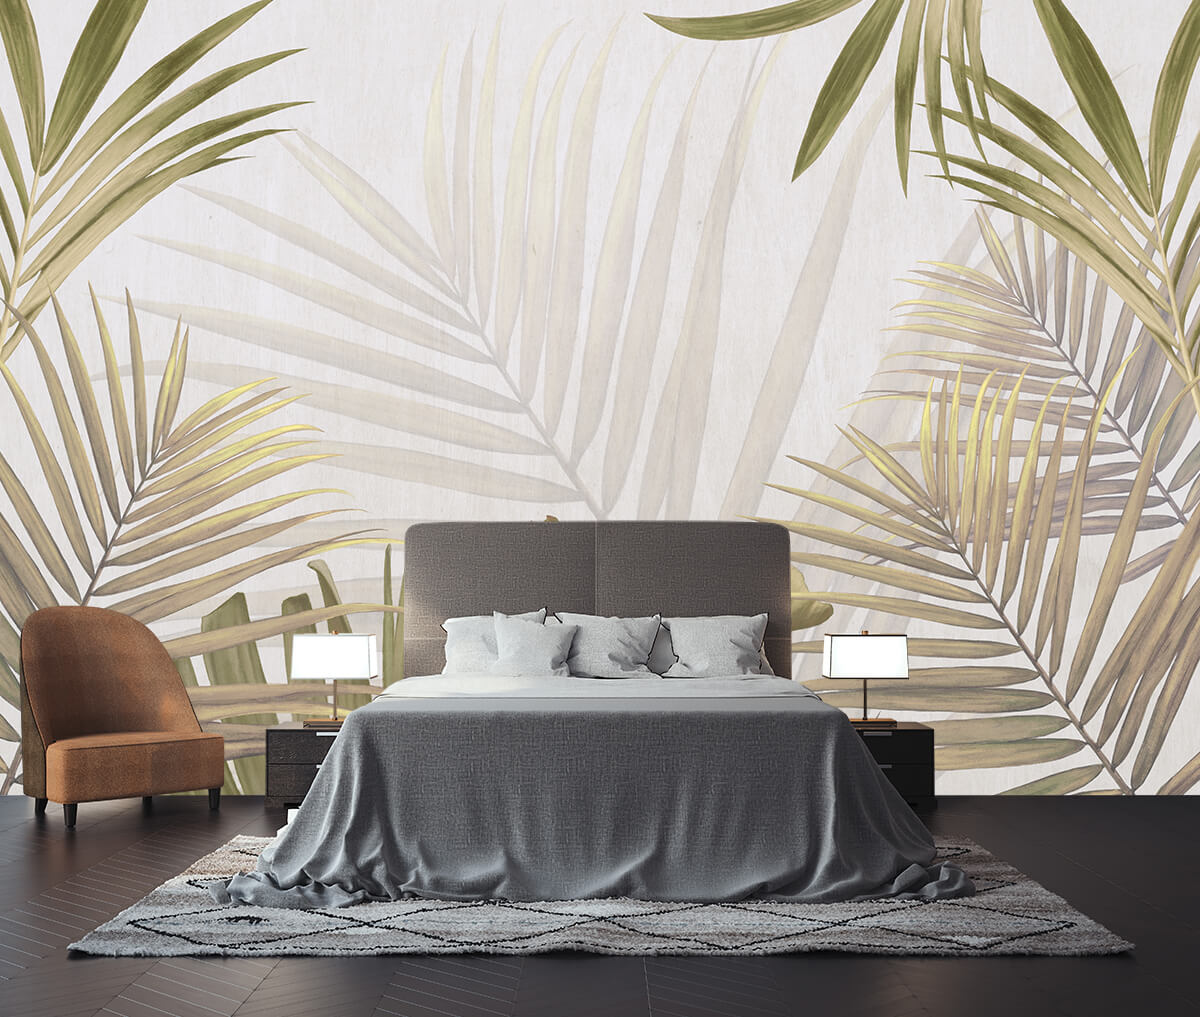 Fototapeta w ogromne liście palm w nowoczesnej sypialni